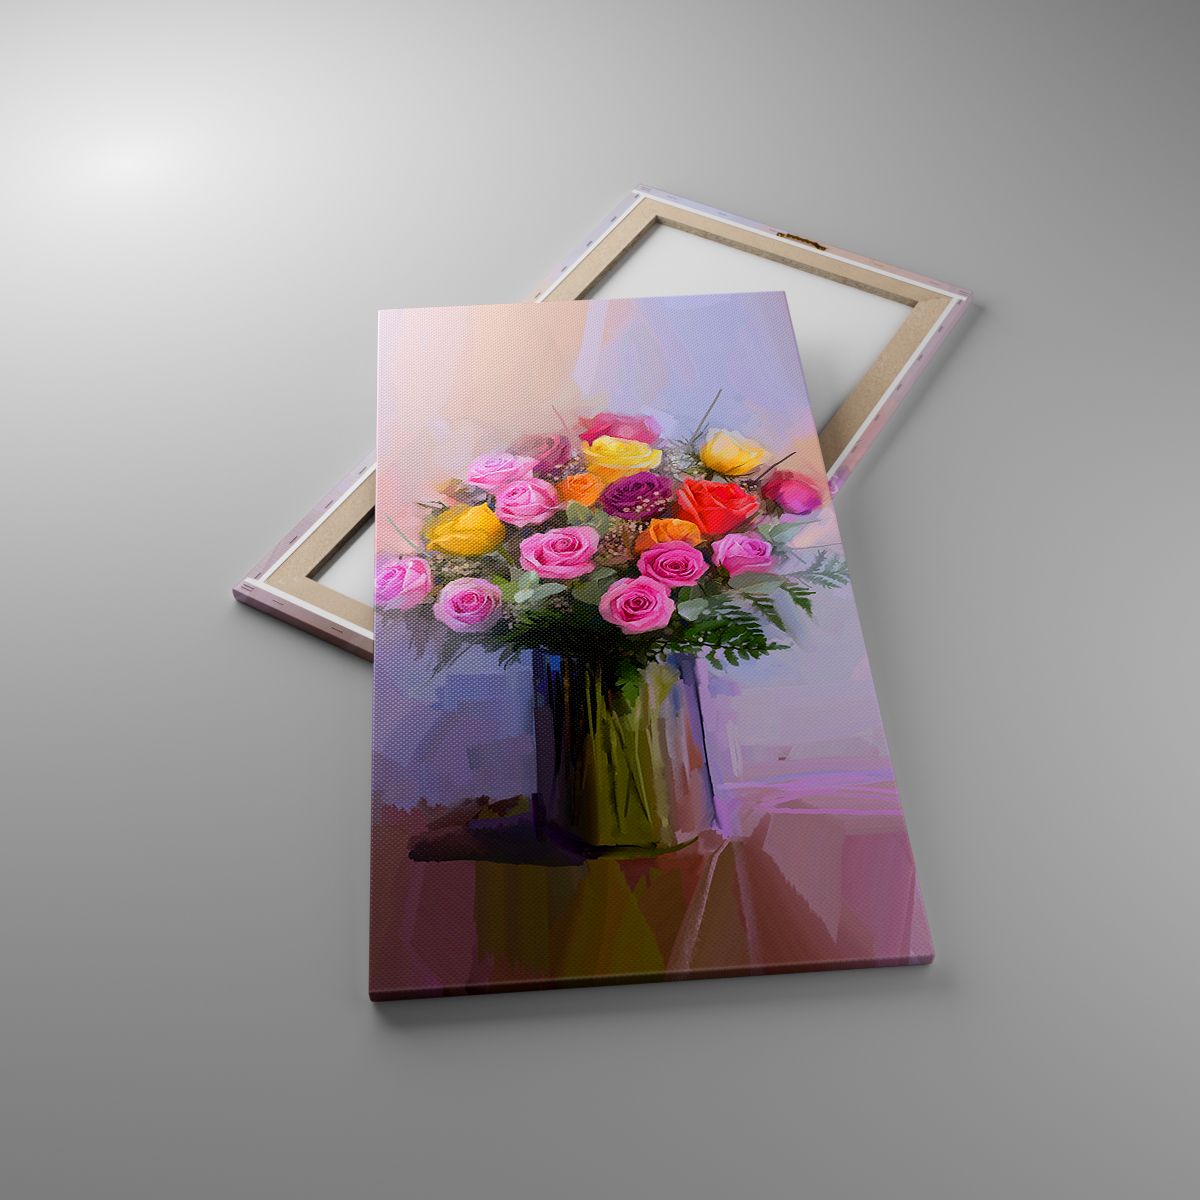 Obrazy Wazon Z Kwiatami, Obrazy Bukiet Kwiatów, Obrazy Sztuka, Obrazy Malarstwo, Obrazy Kwiaciarnia